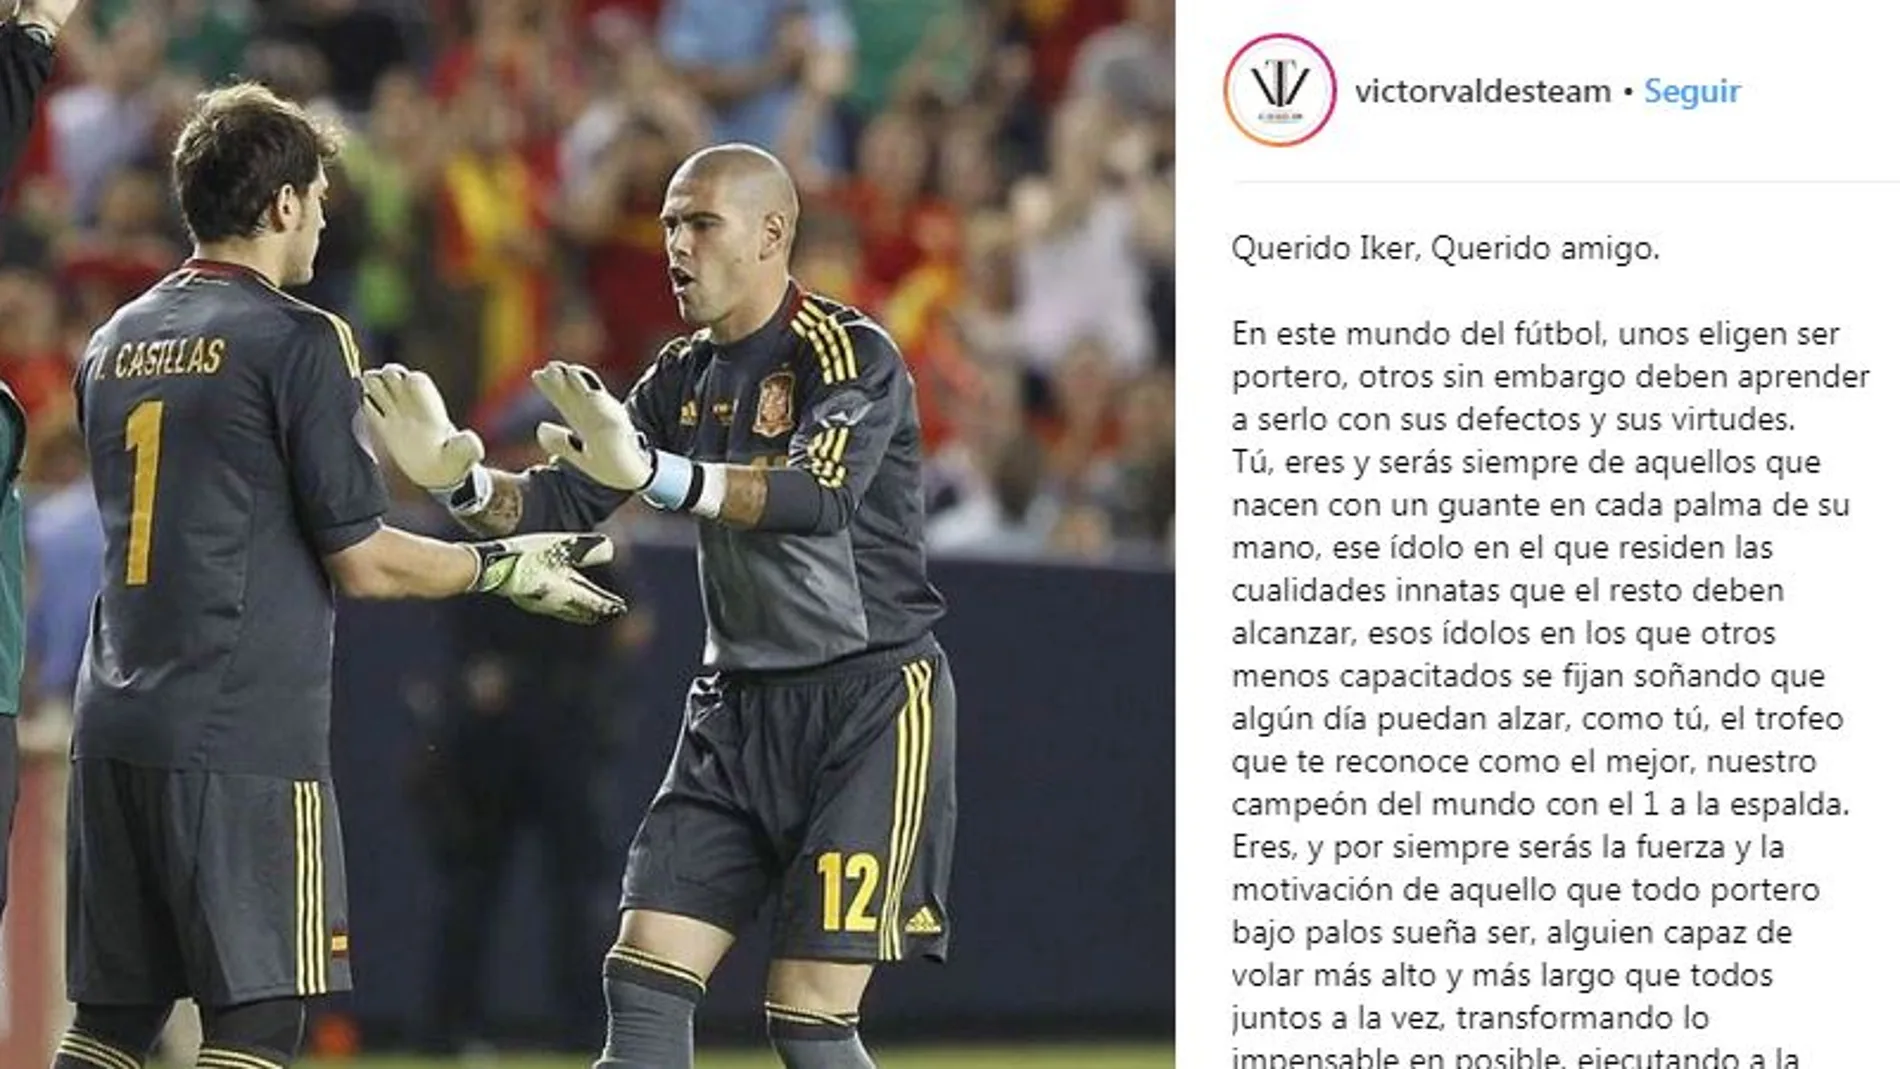 La carta de Víctor Valdés en Instagram